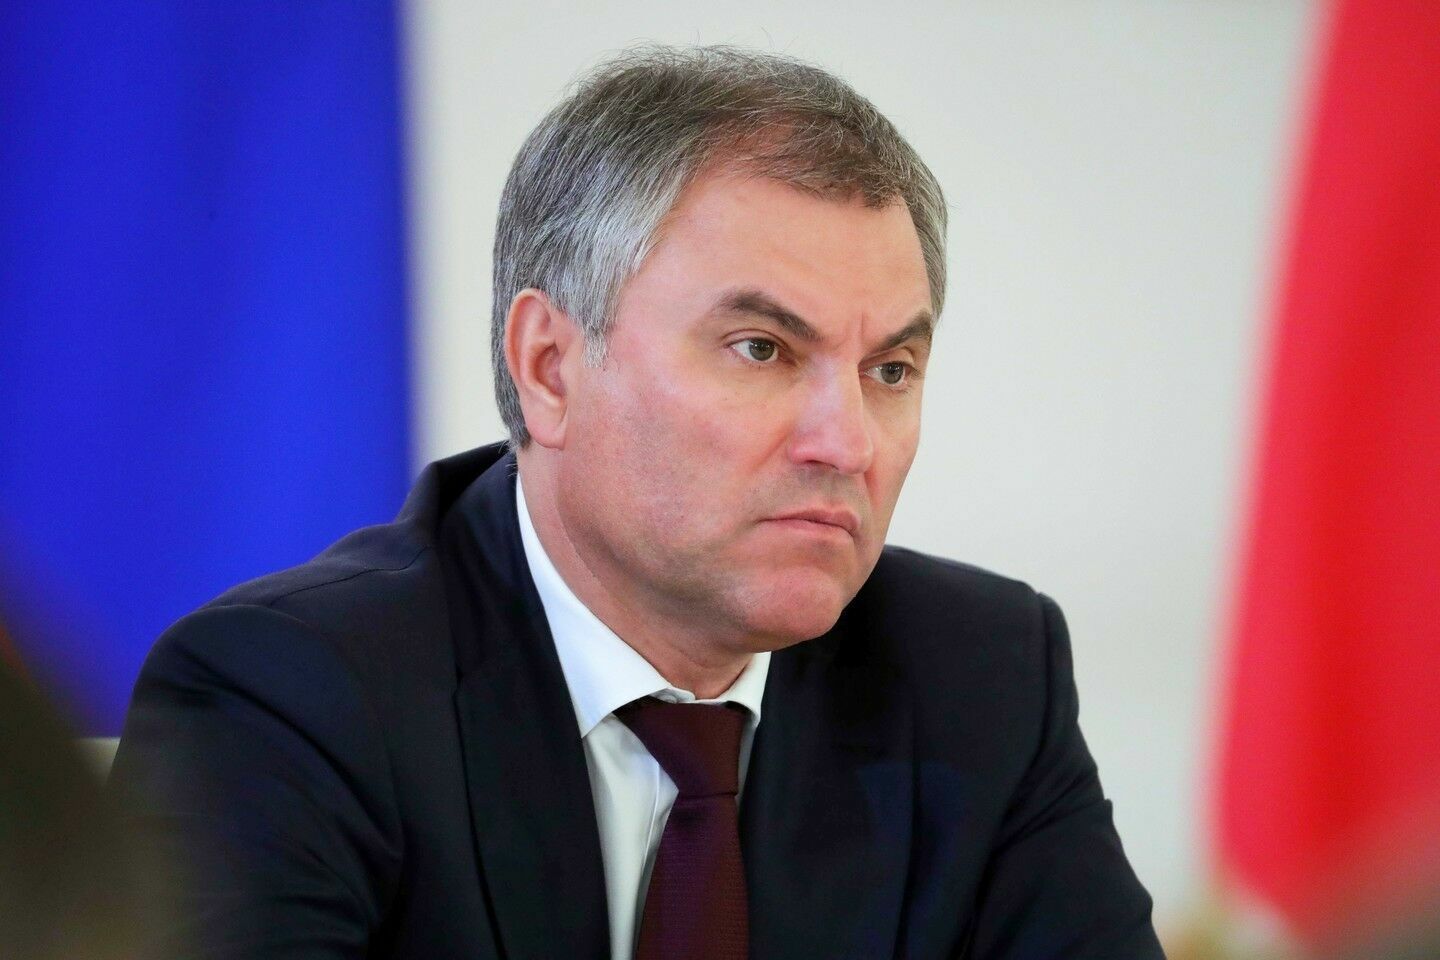 Володин заявил, что Германия и Франция должны выплатить компенсации жителям Донбасса